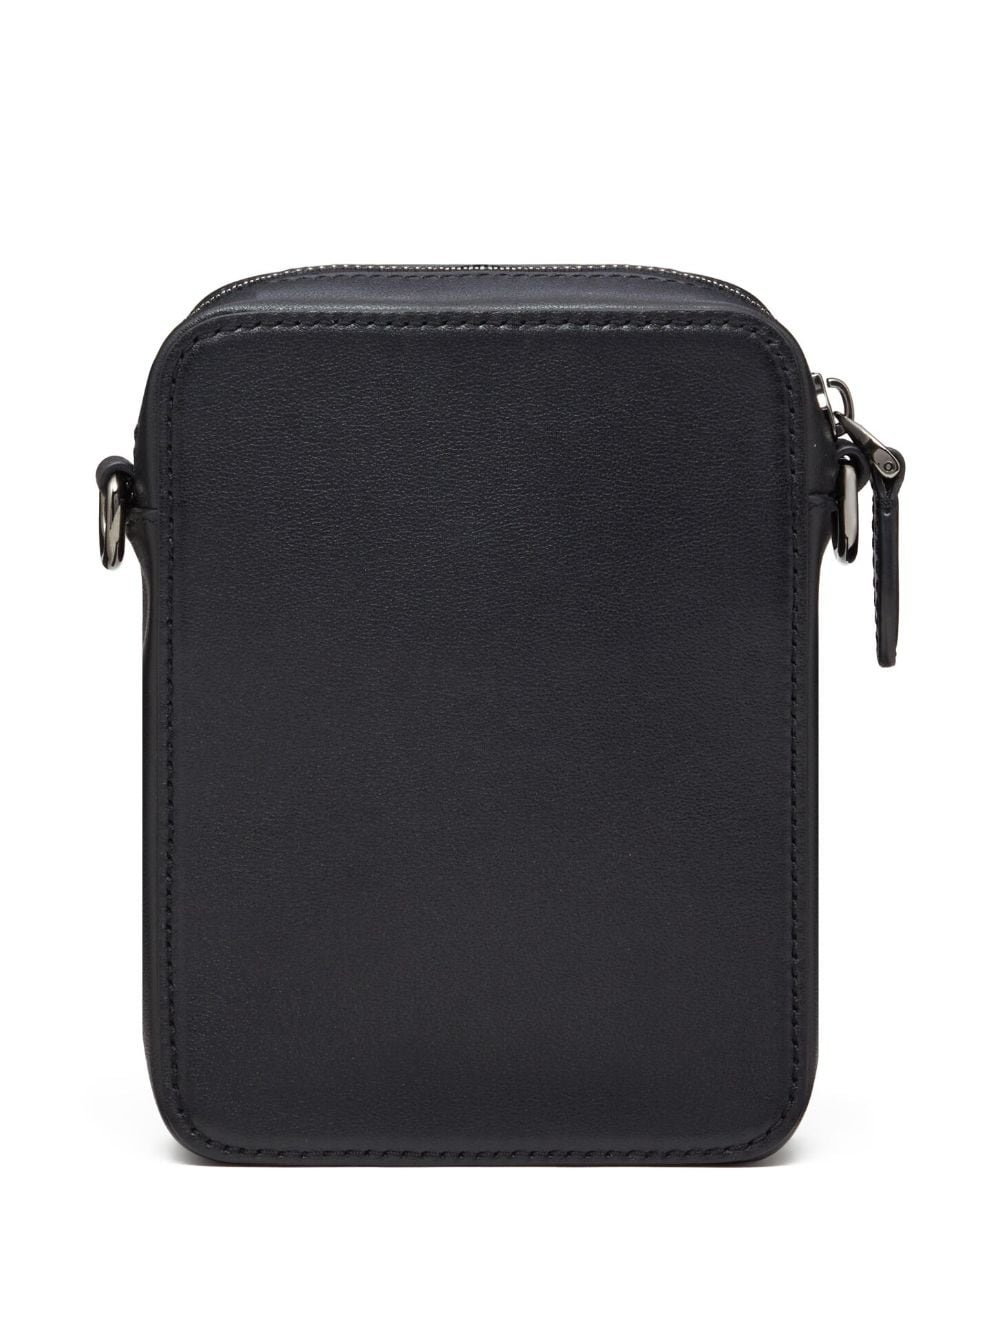 VLogo leather shoulder bag - 3